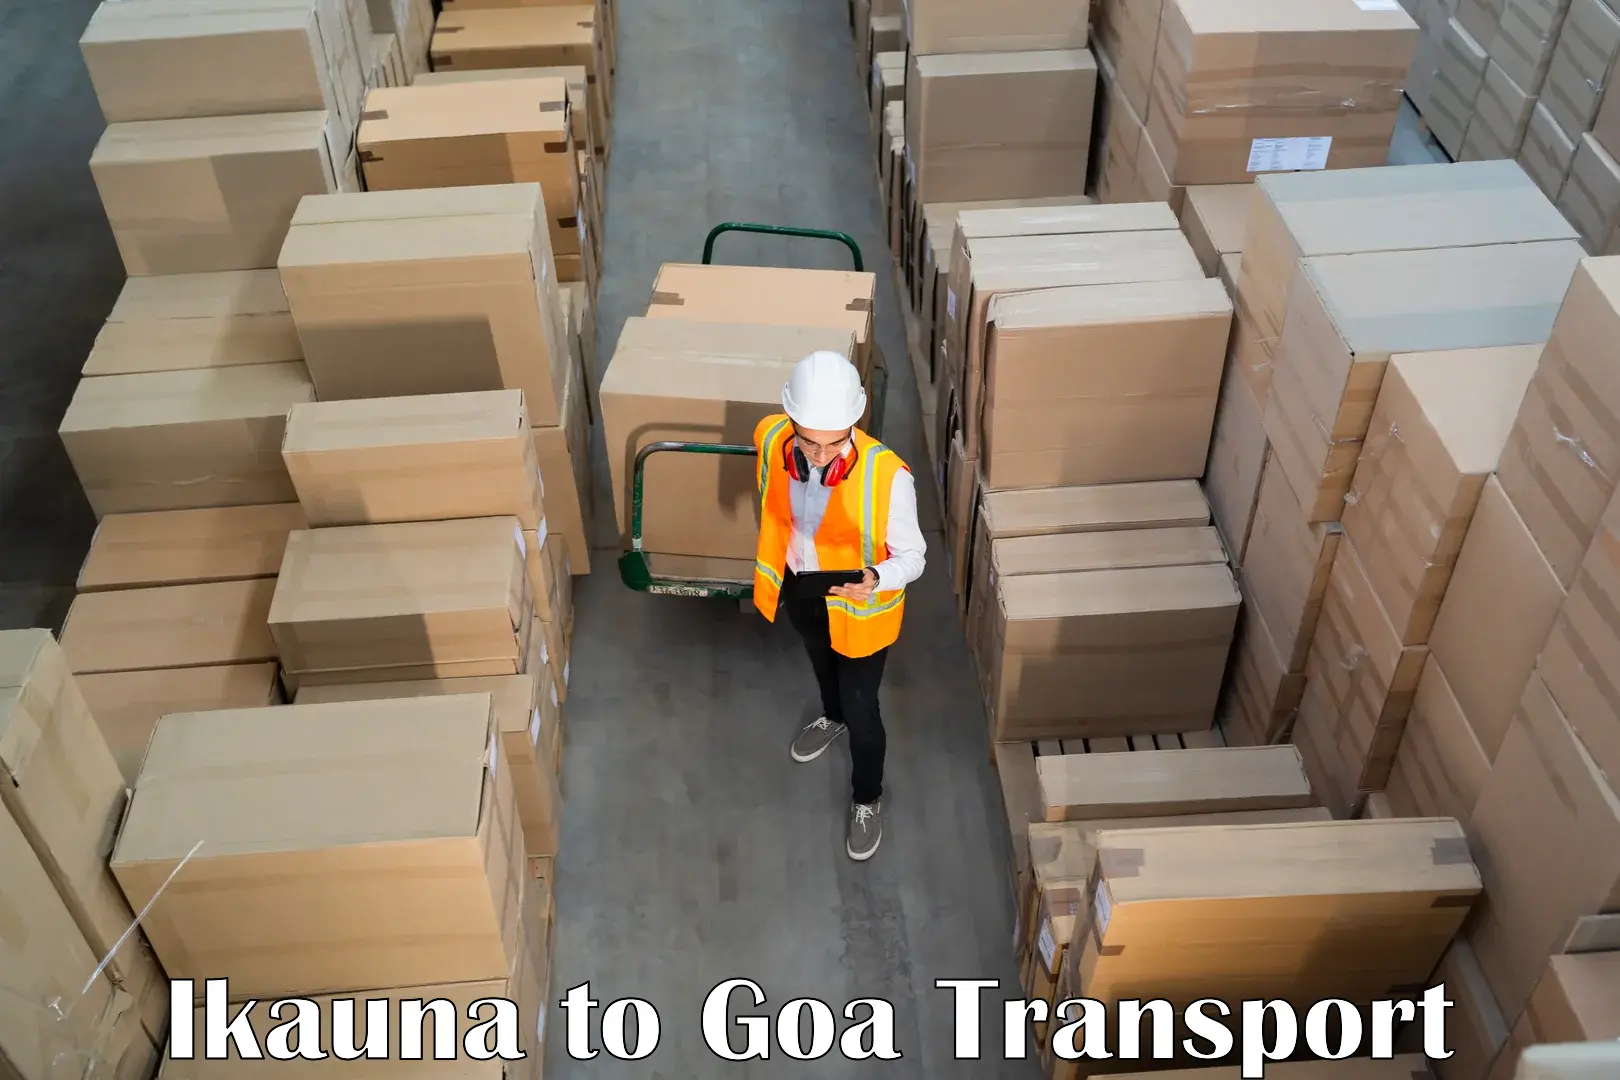 Delivery service Ikauna to Ponda